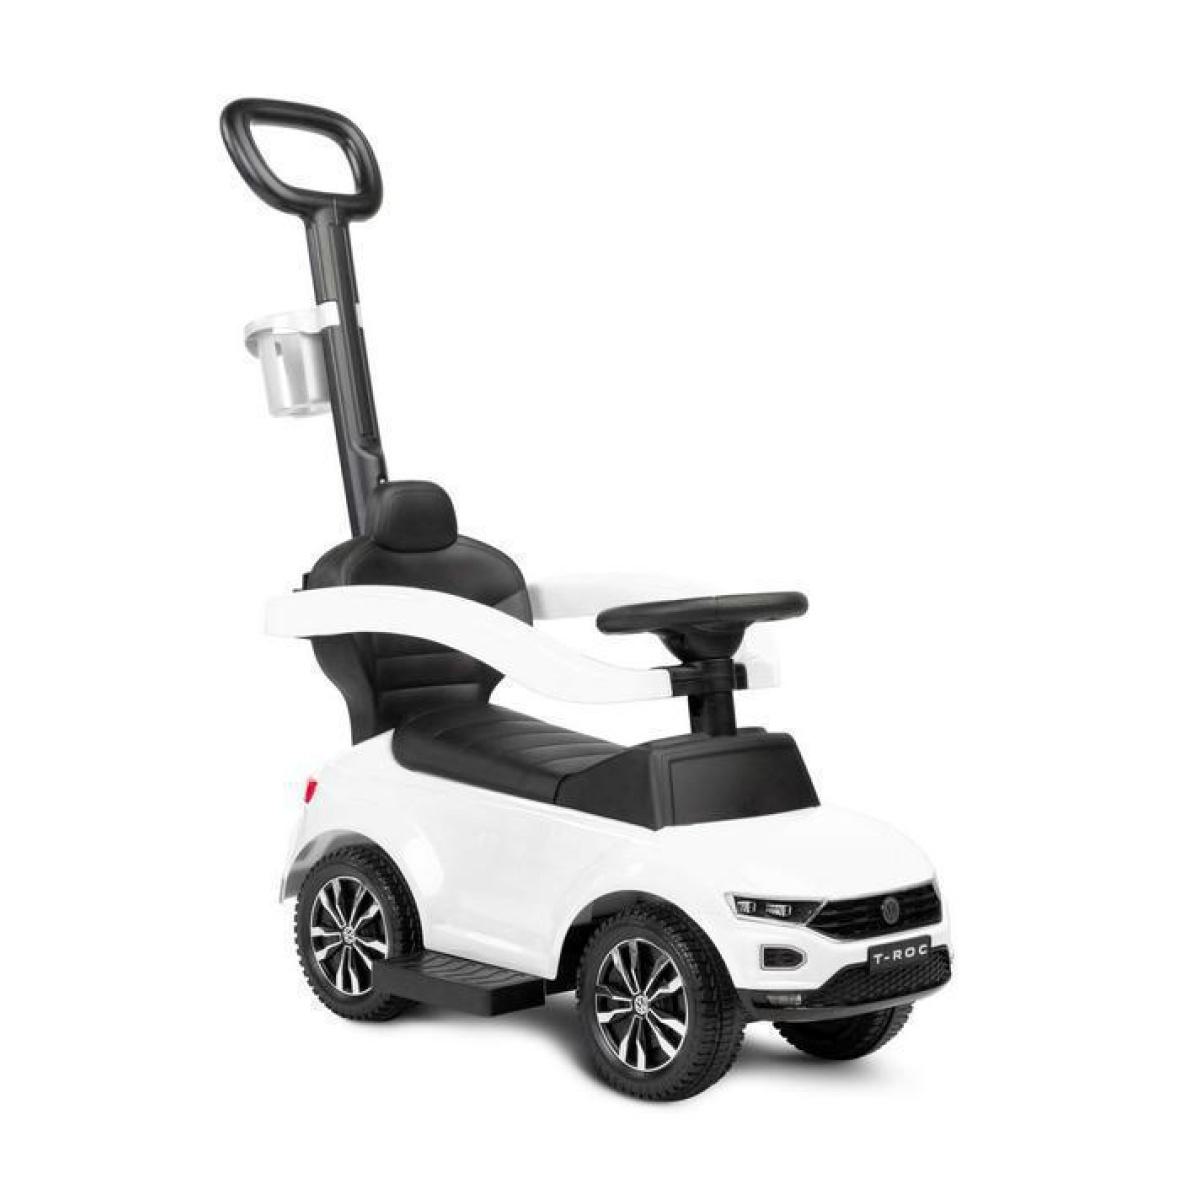 Παιδικό Αμαξάκι - Περπατούρα Ride on Car Με Λαβή VW T-Roc Licenced Product Toyz By Caretero Λευκό